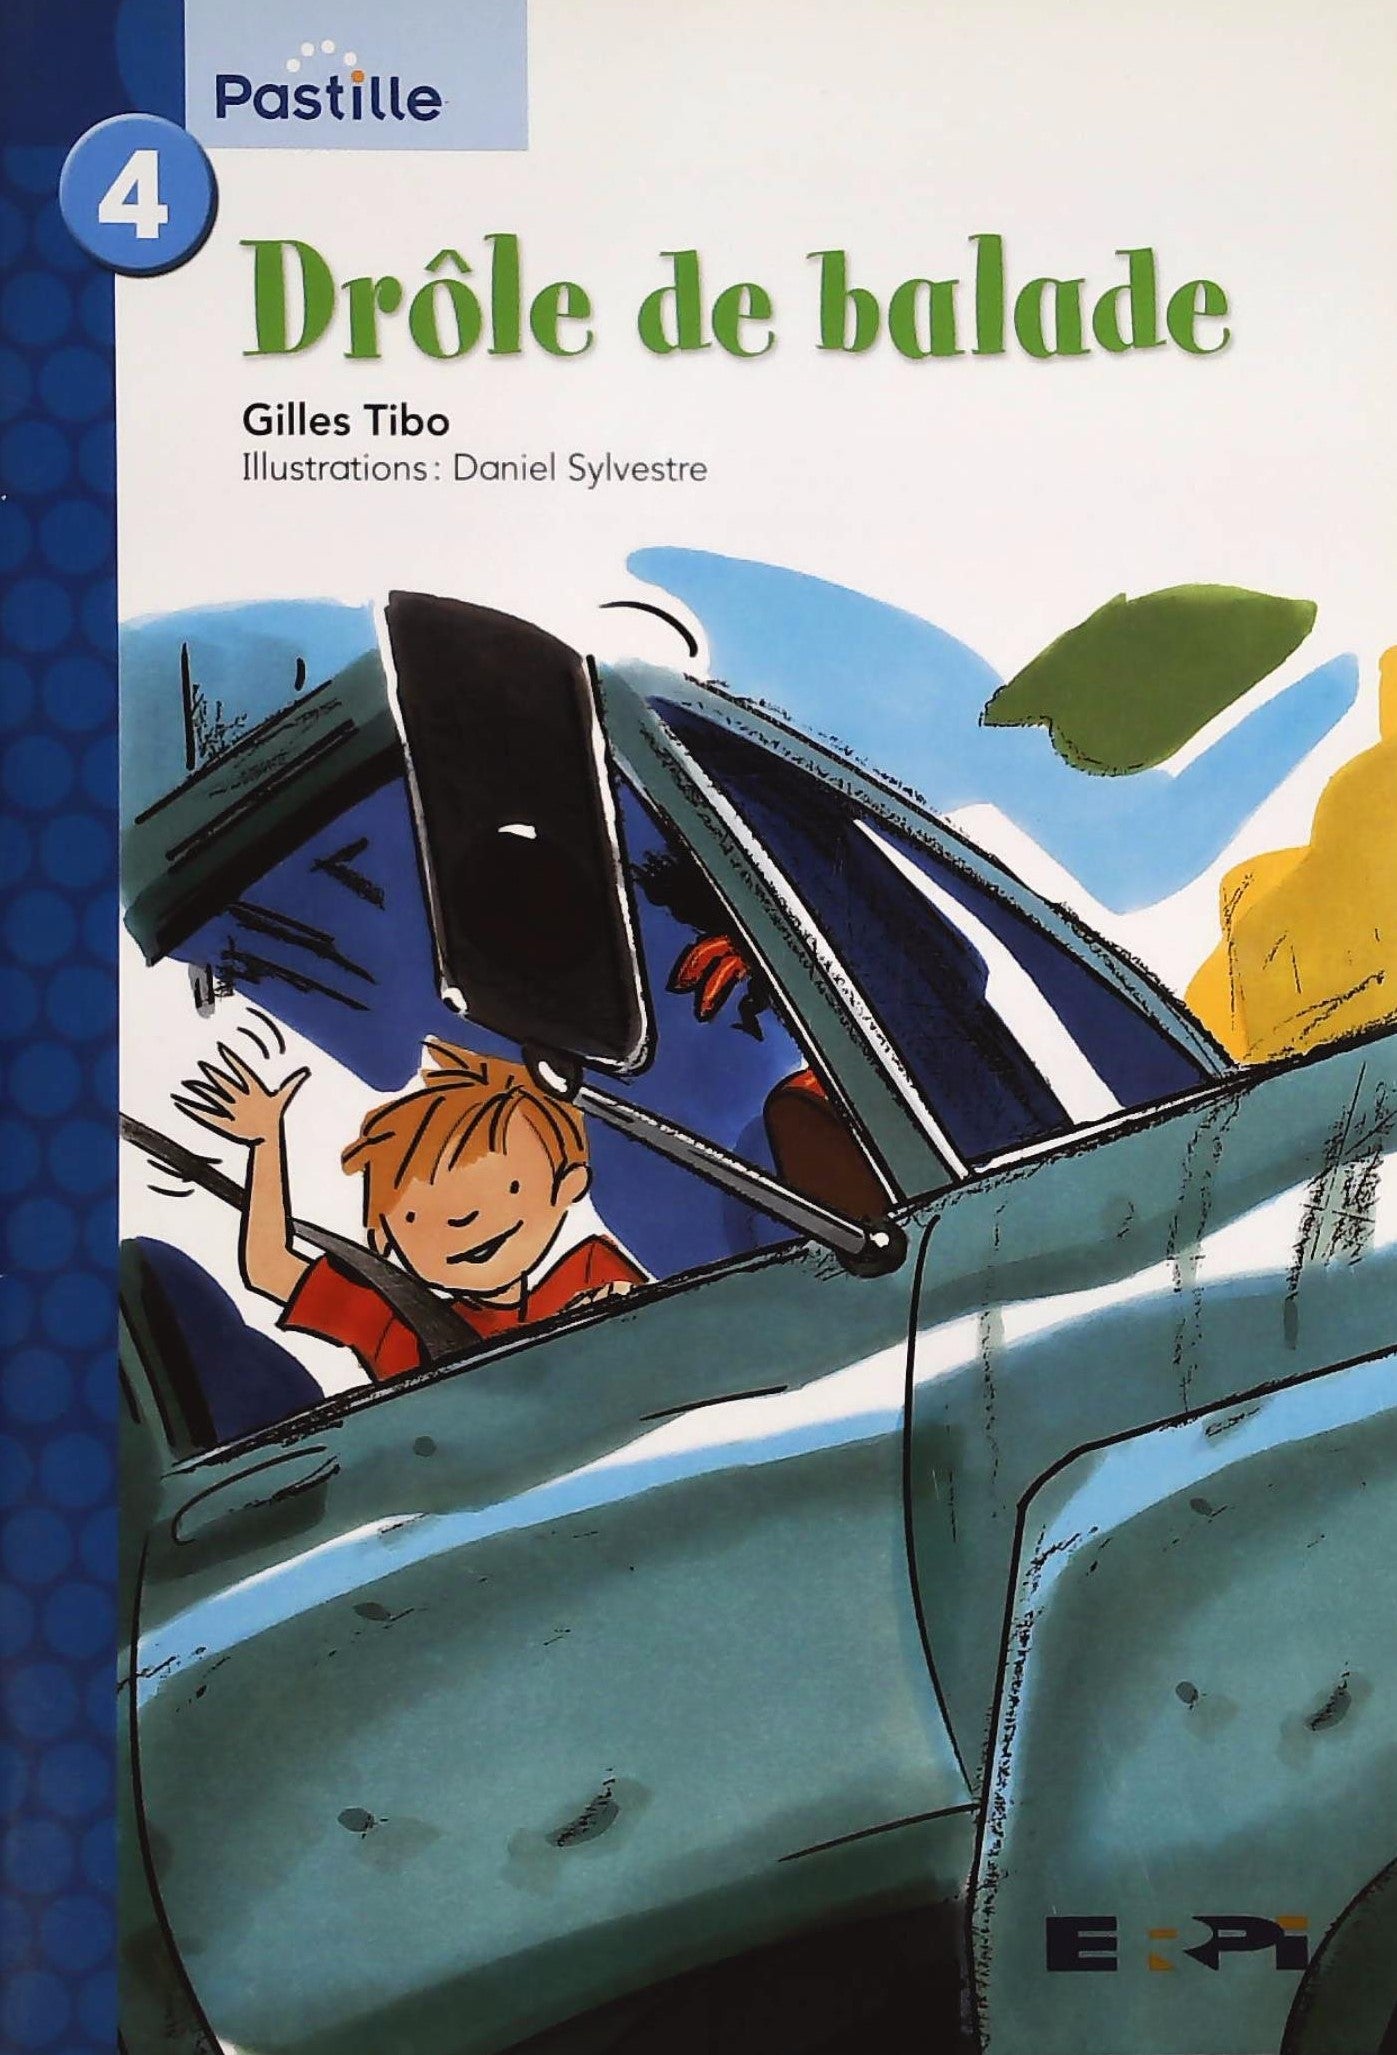 Livre ISBN 2761323637 4 : Drôle de balade - Mathématique 1er cycle (manuel de l'élève) (Gilles Tibo)